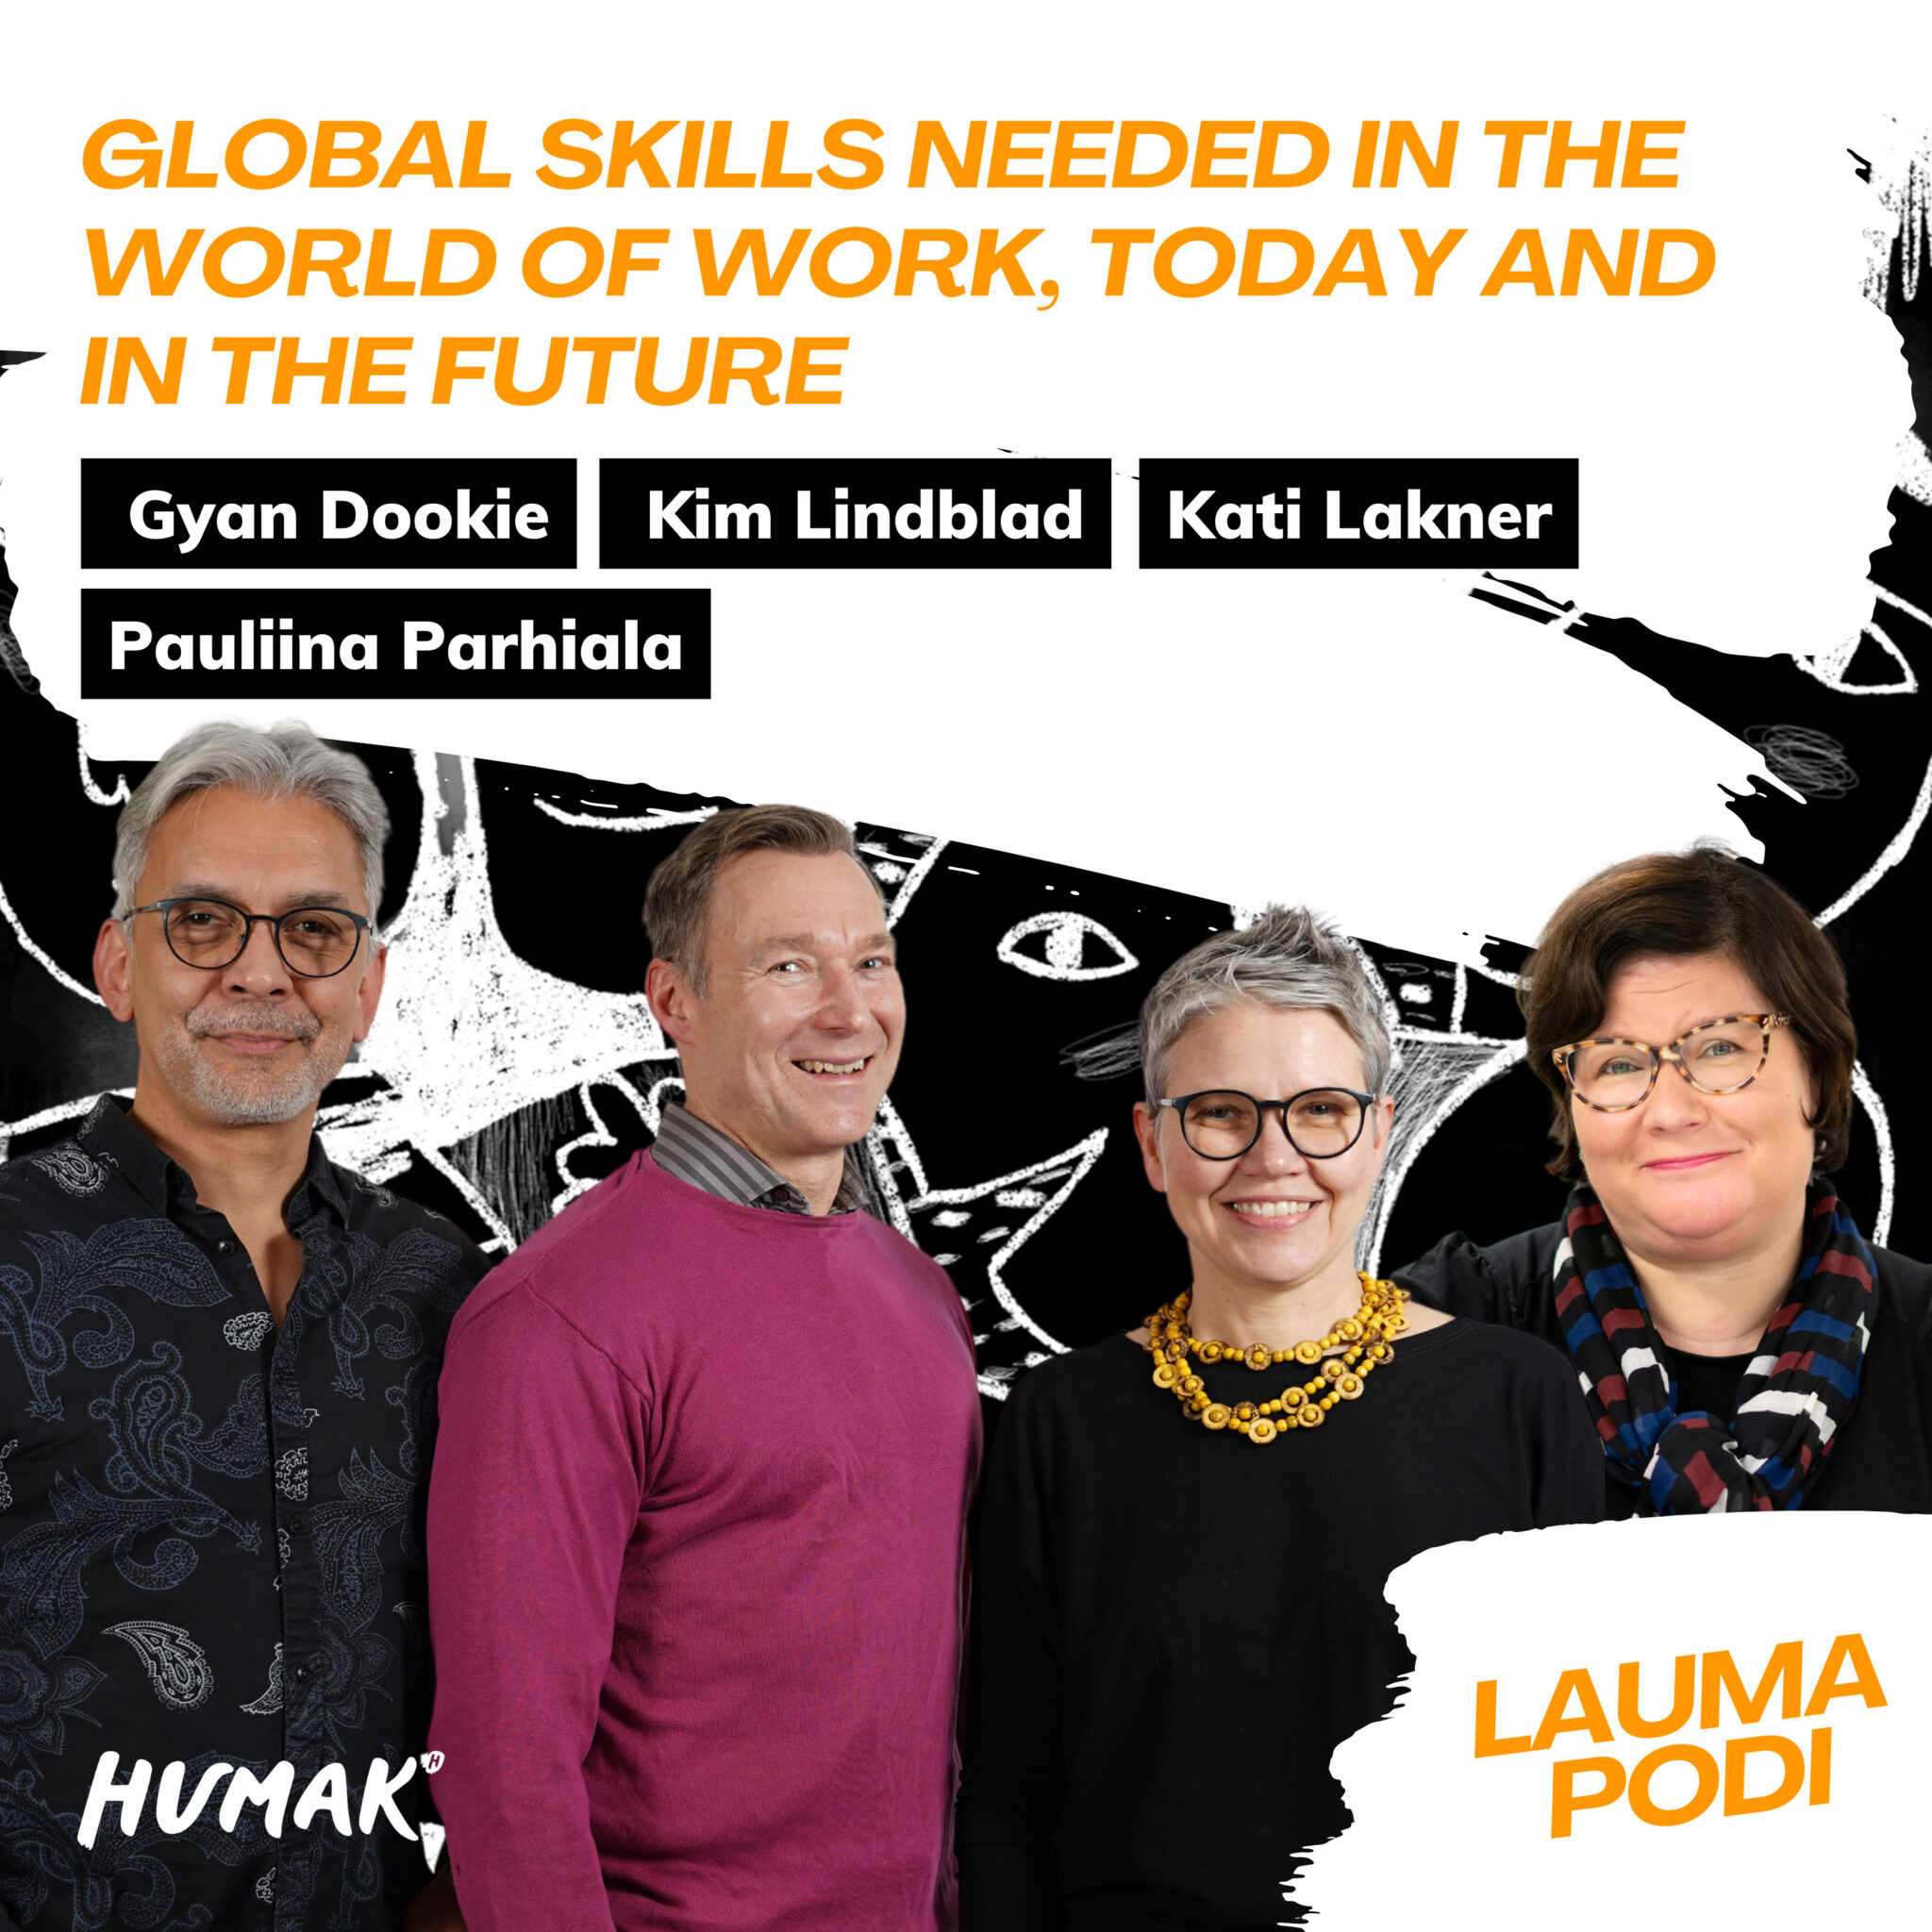 Neljä henkilöä poseeraa rivissä: Gyan Dookie, Kim Lindblad, Kati Lakner ja Pauliina Parhiala. Jakson otsikko " Global skills needed in the world of work, today and in the future?" sekä Humakin logo ja Laumapodi-logo.